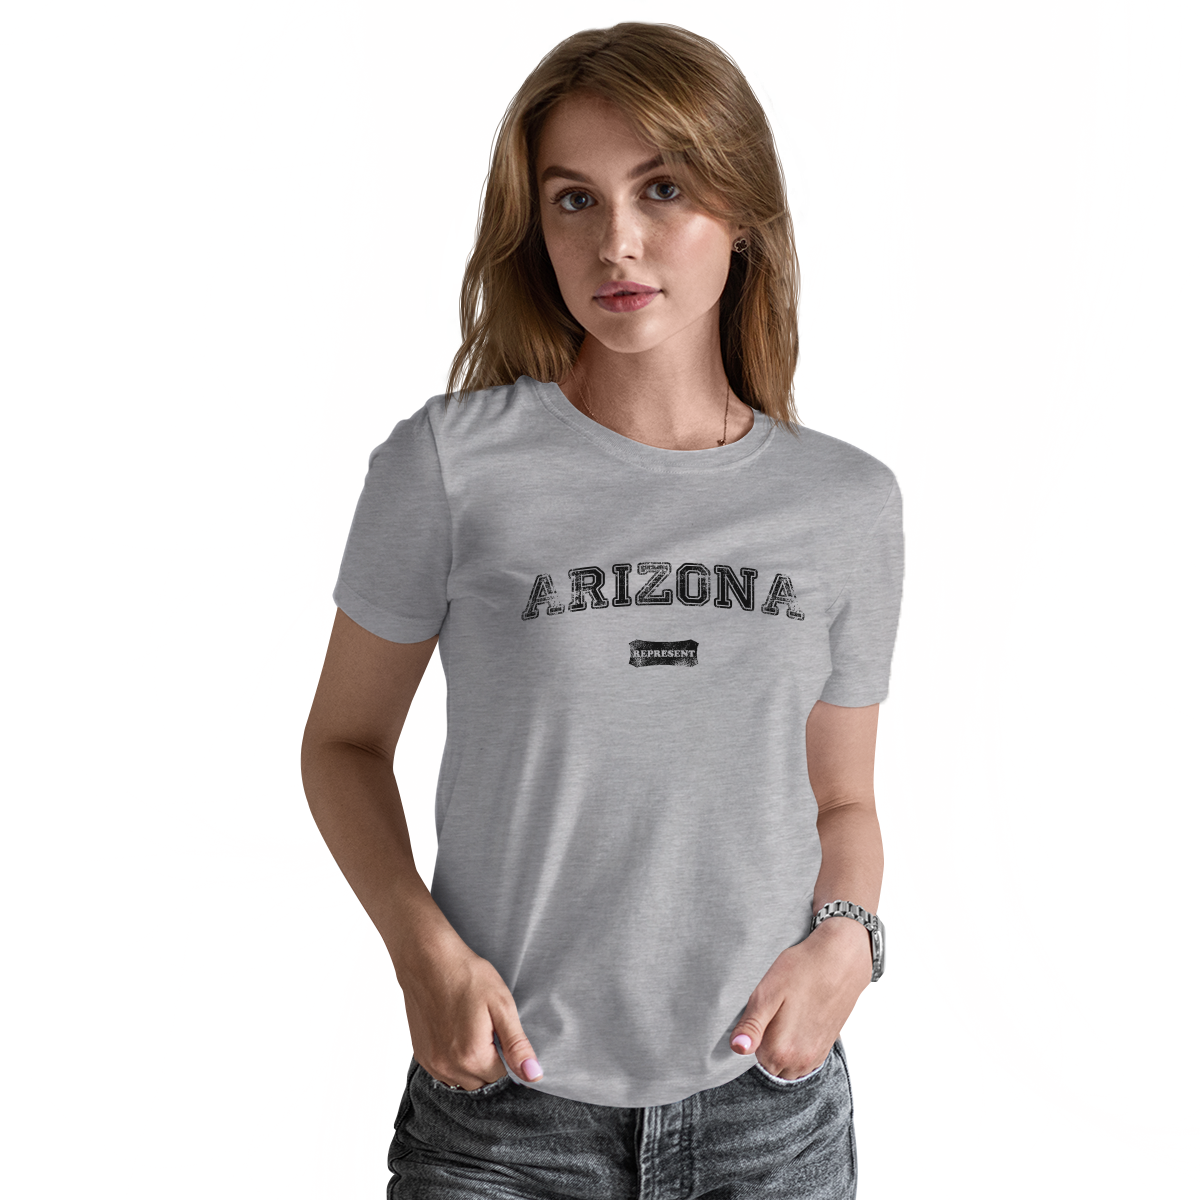 Arizona Represent Women's T-shirt | Gray